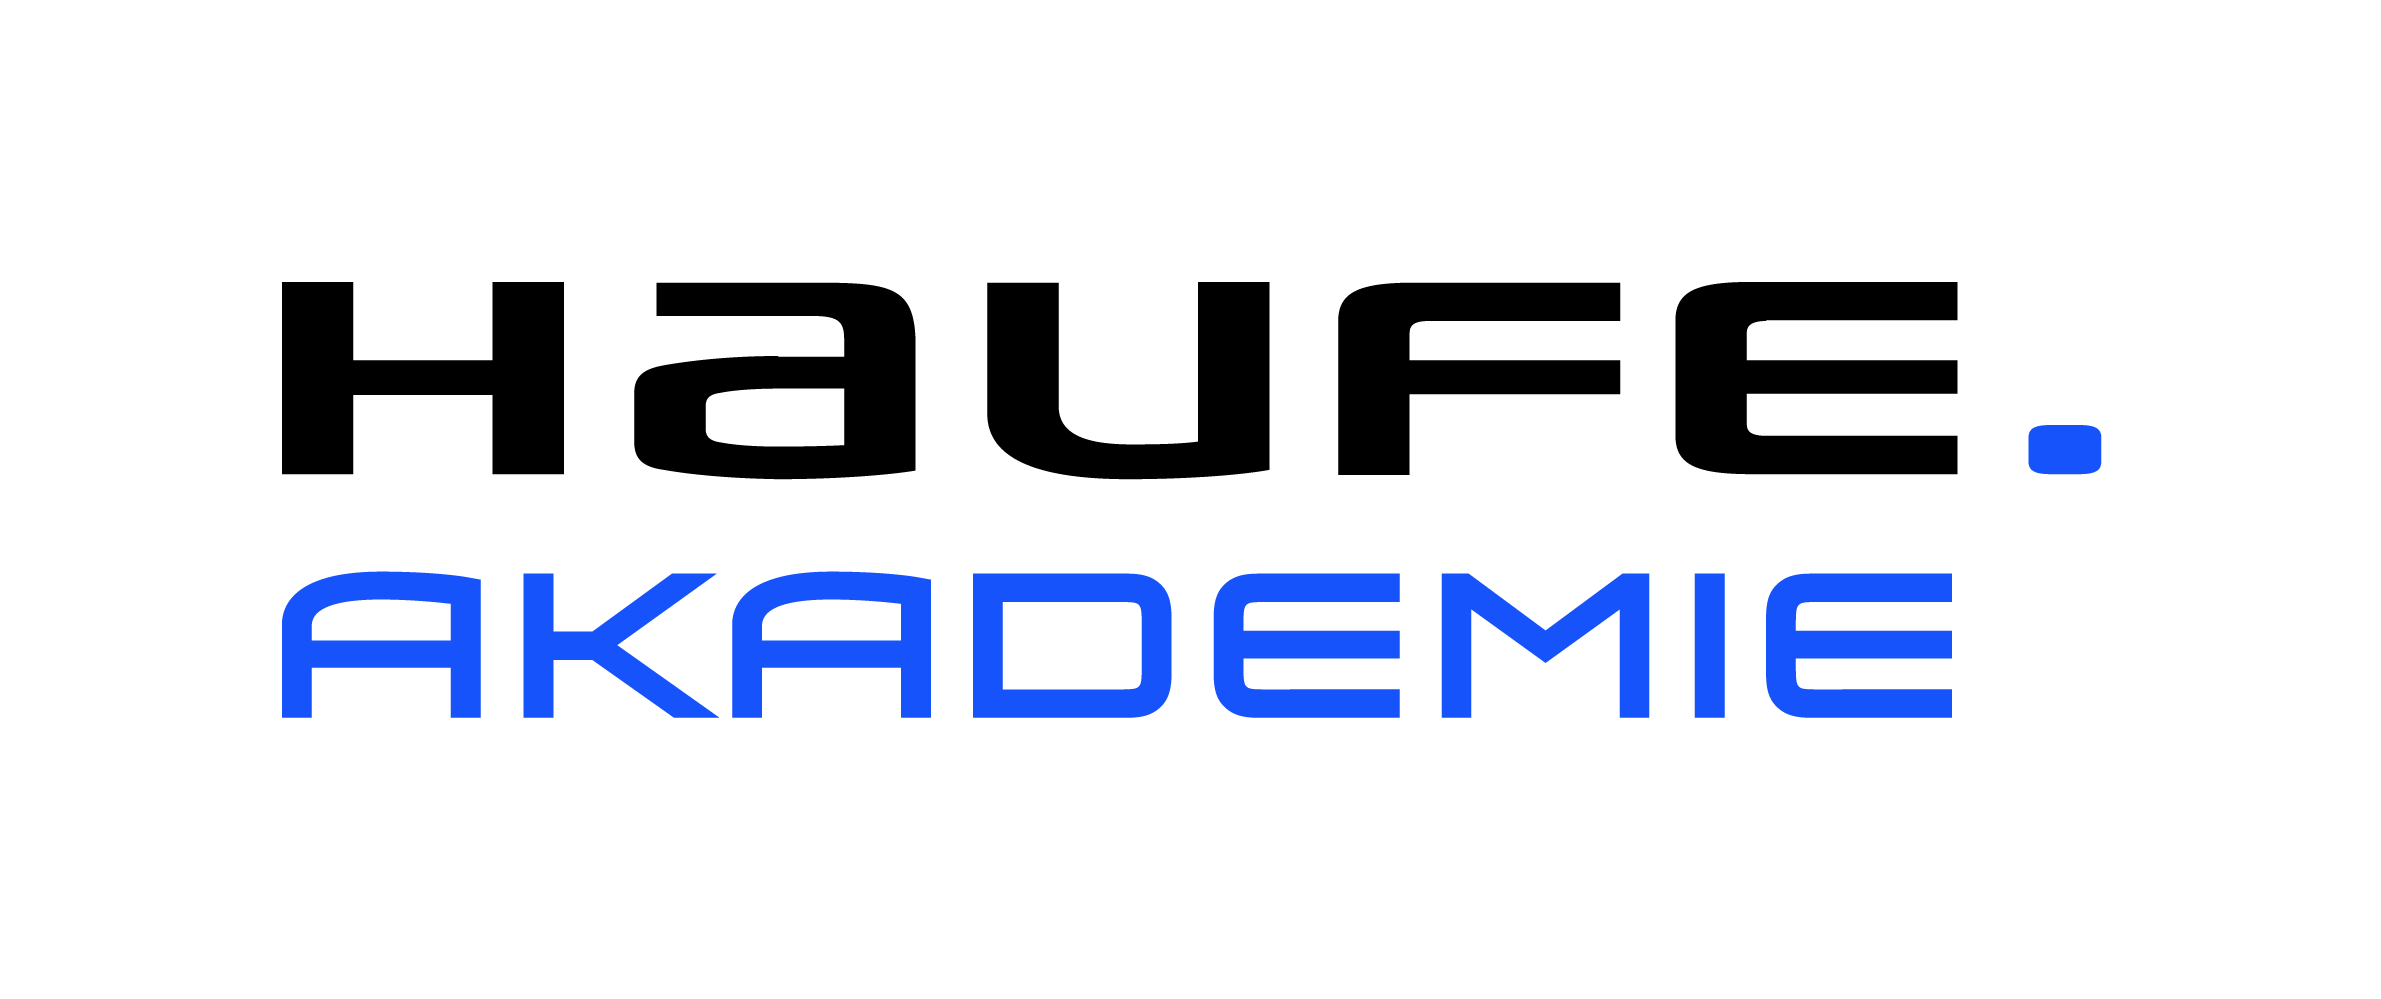 Haufe Akademie Logo 2381x999px